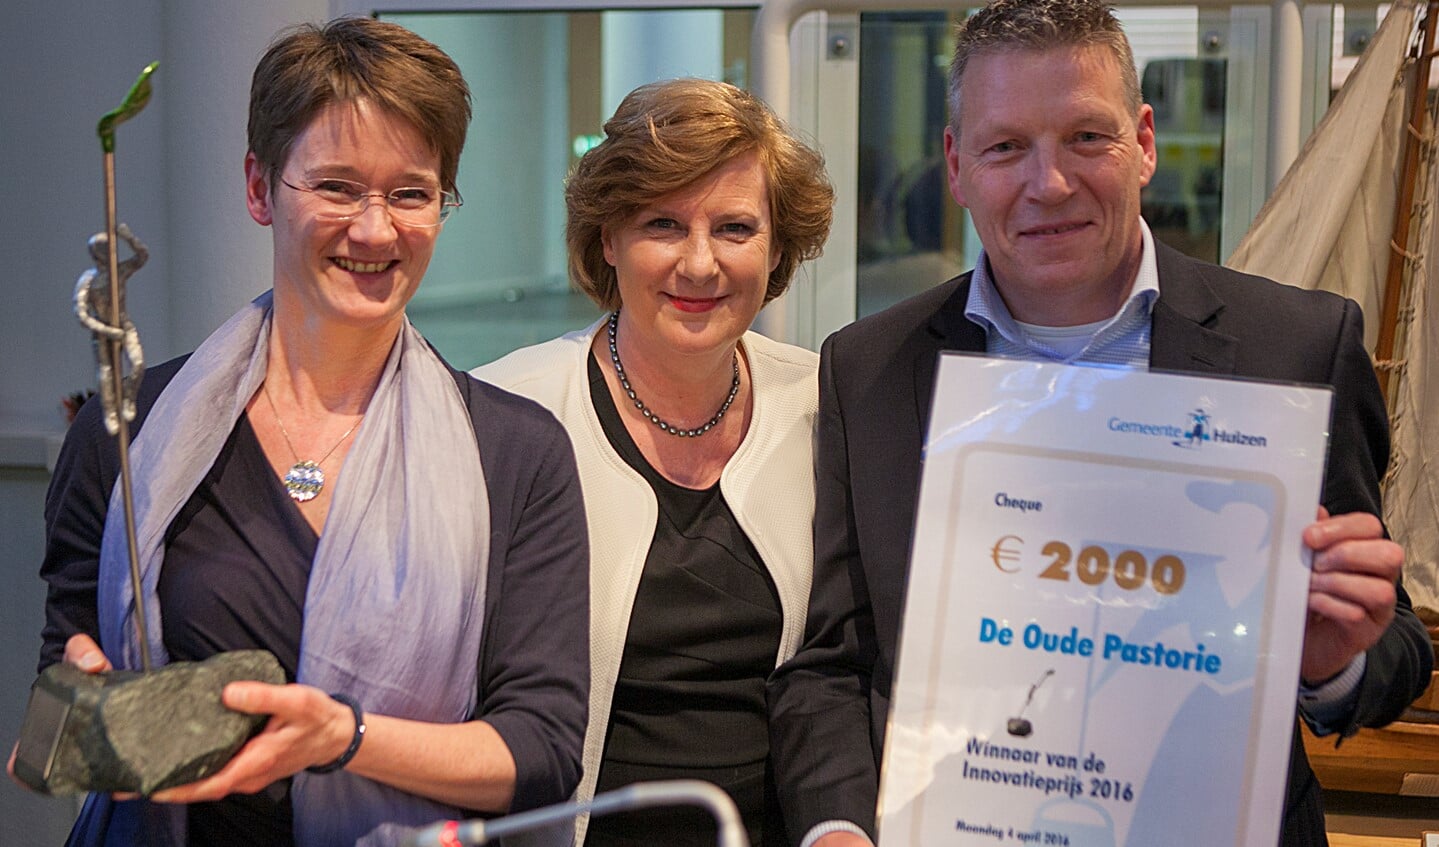 In 2016 won De Oude Pastorie de prijs.